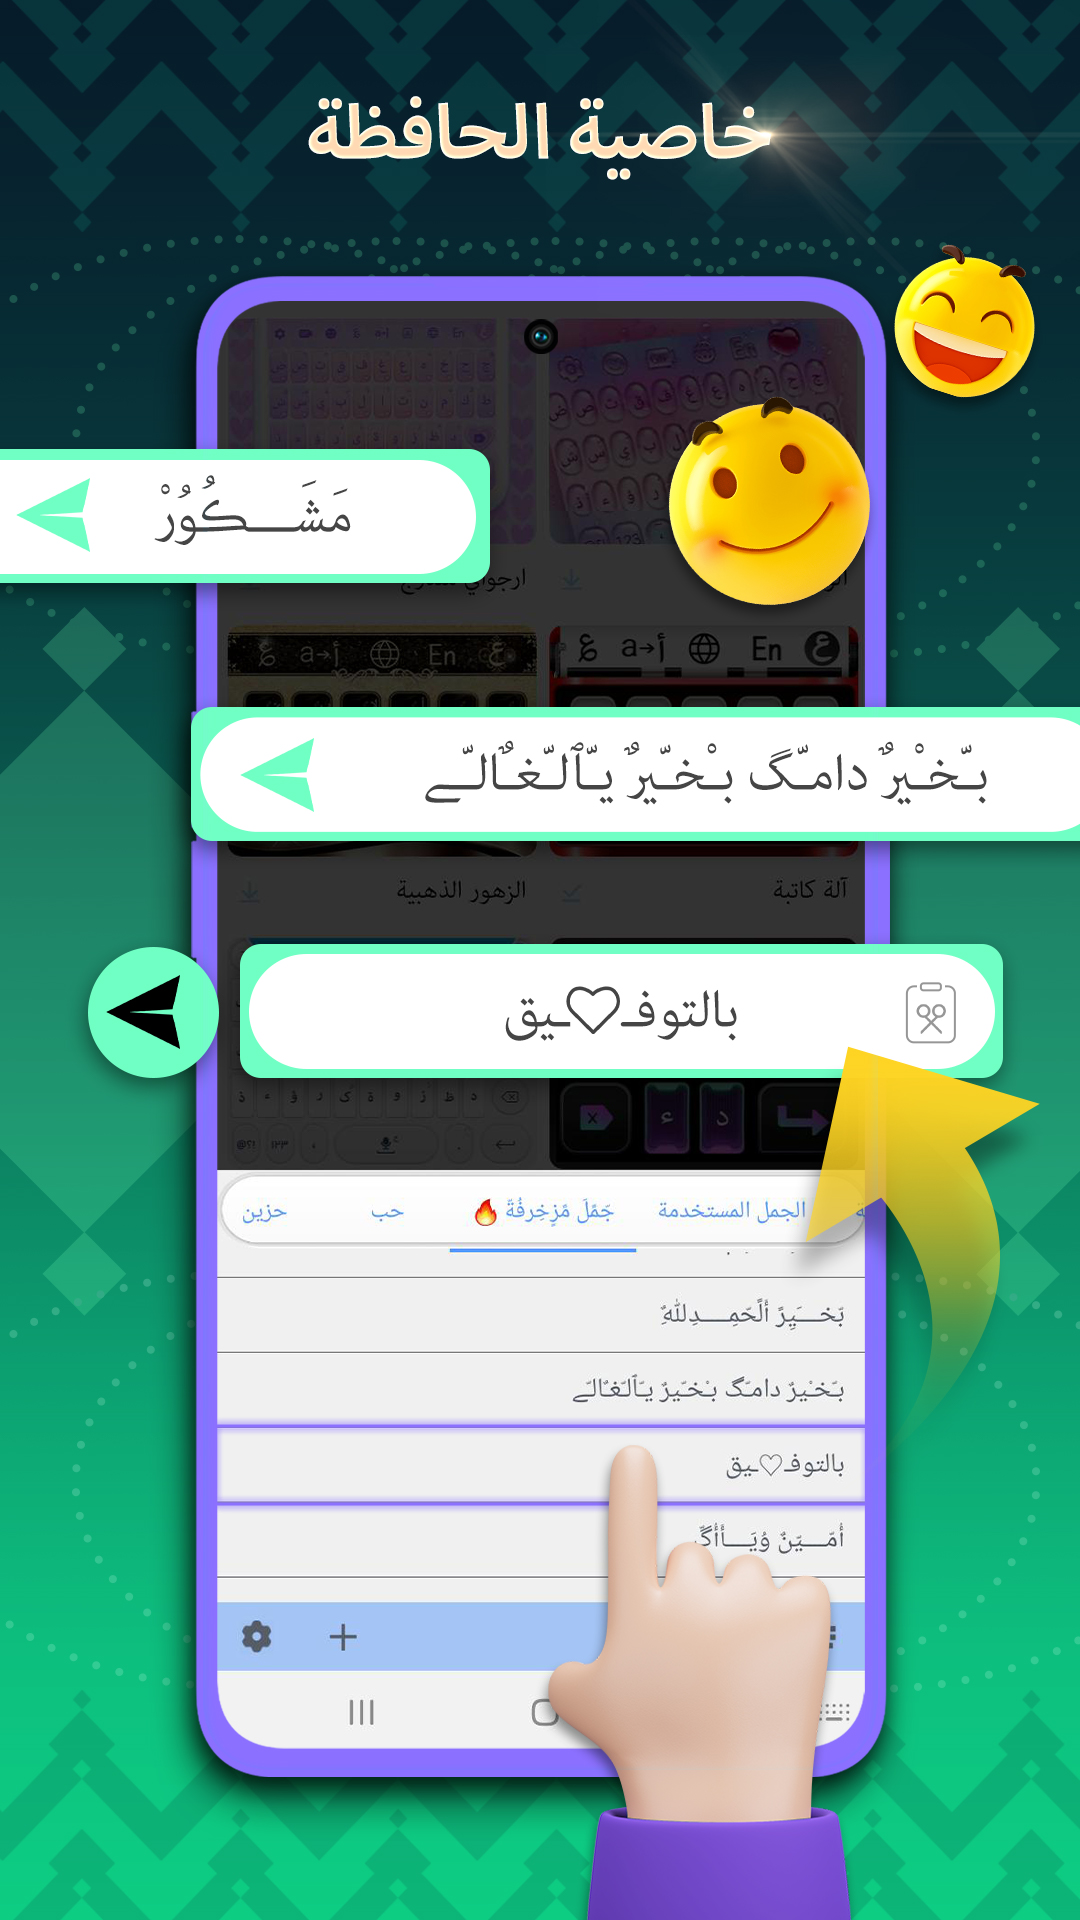 تمام لوحة المفاتيح العربية APK 3.24.107 for Android – Download تمام لوحة  المفاتيح العربية APK Latest Version from APKFab.com